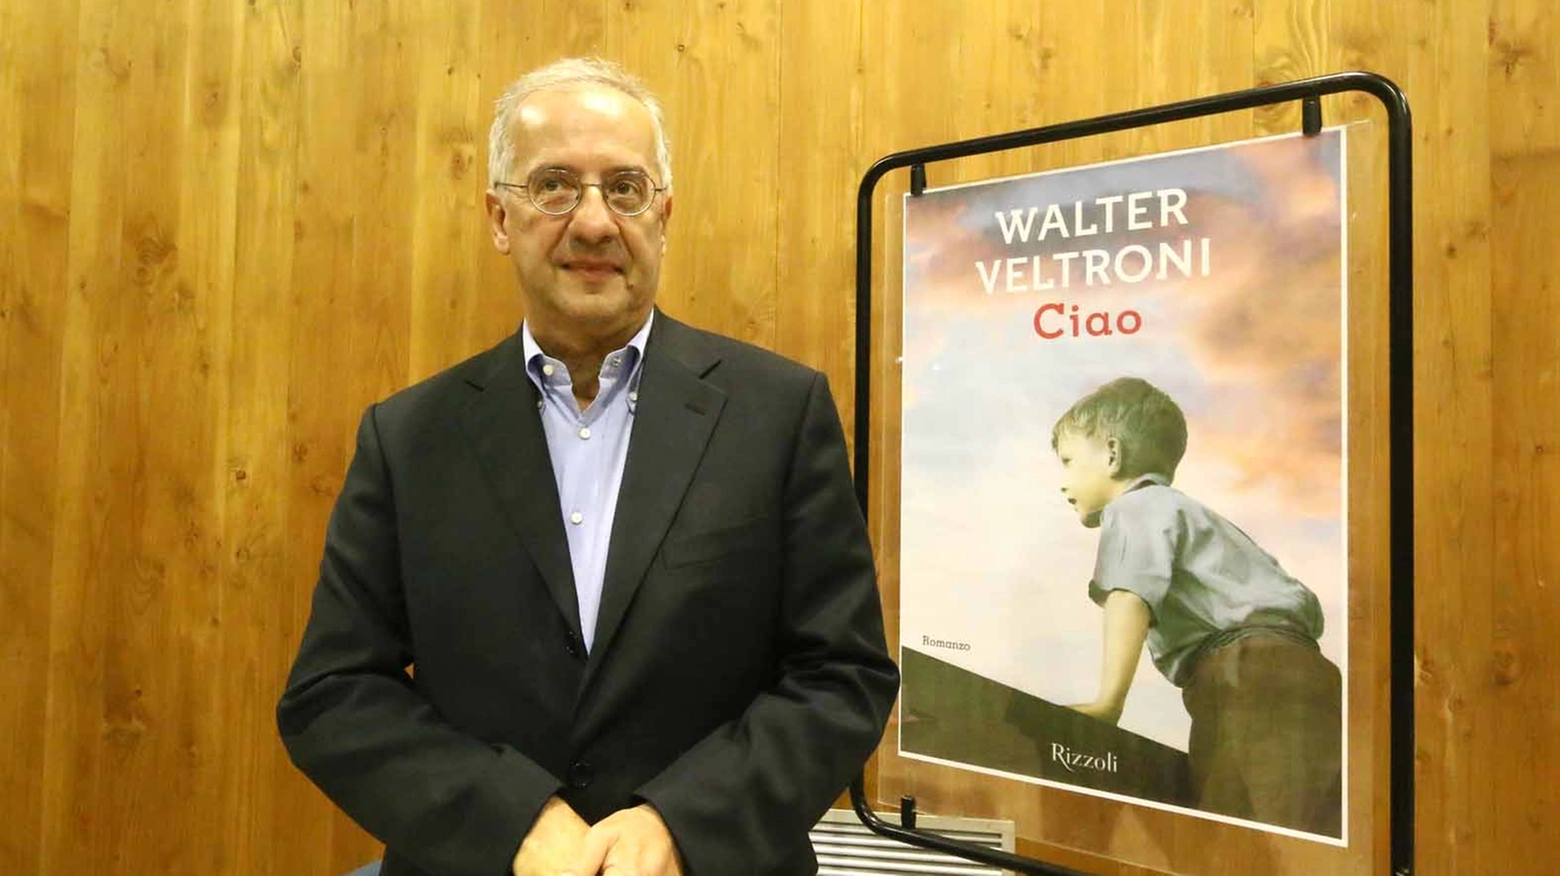 Walter Veltroni presenta il suo libro "Ciao" ad Avane. Foto Nucci/Germogli 